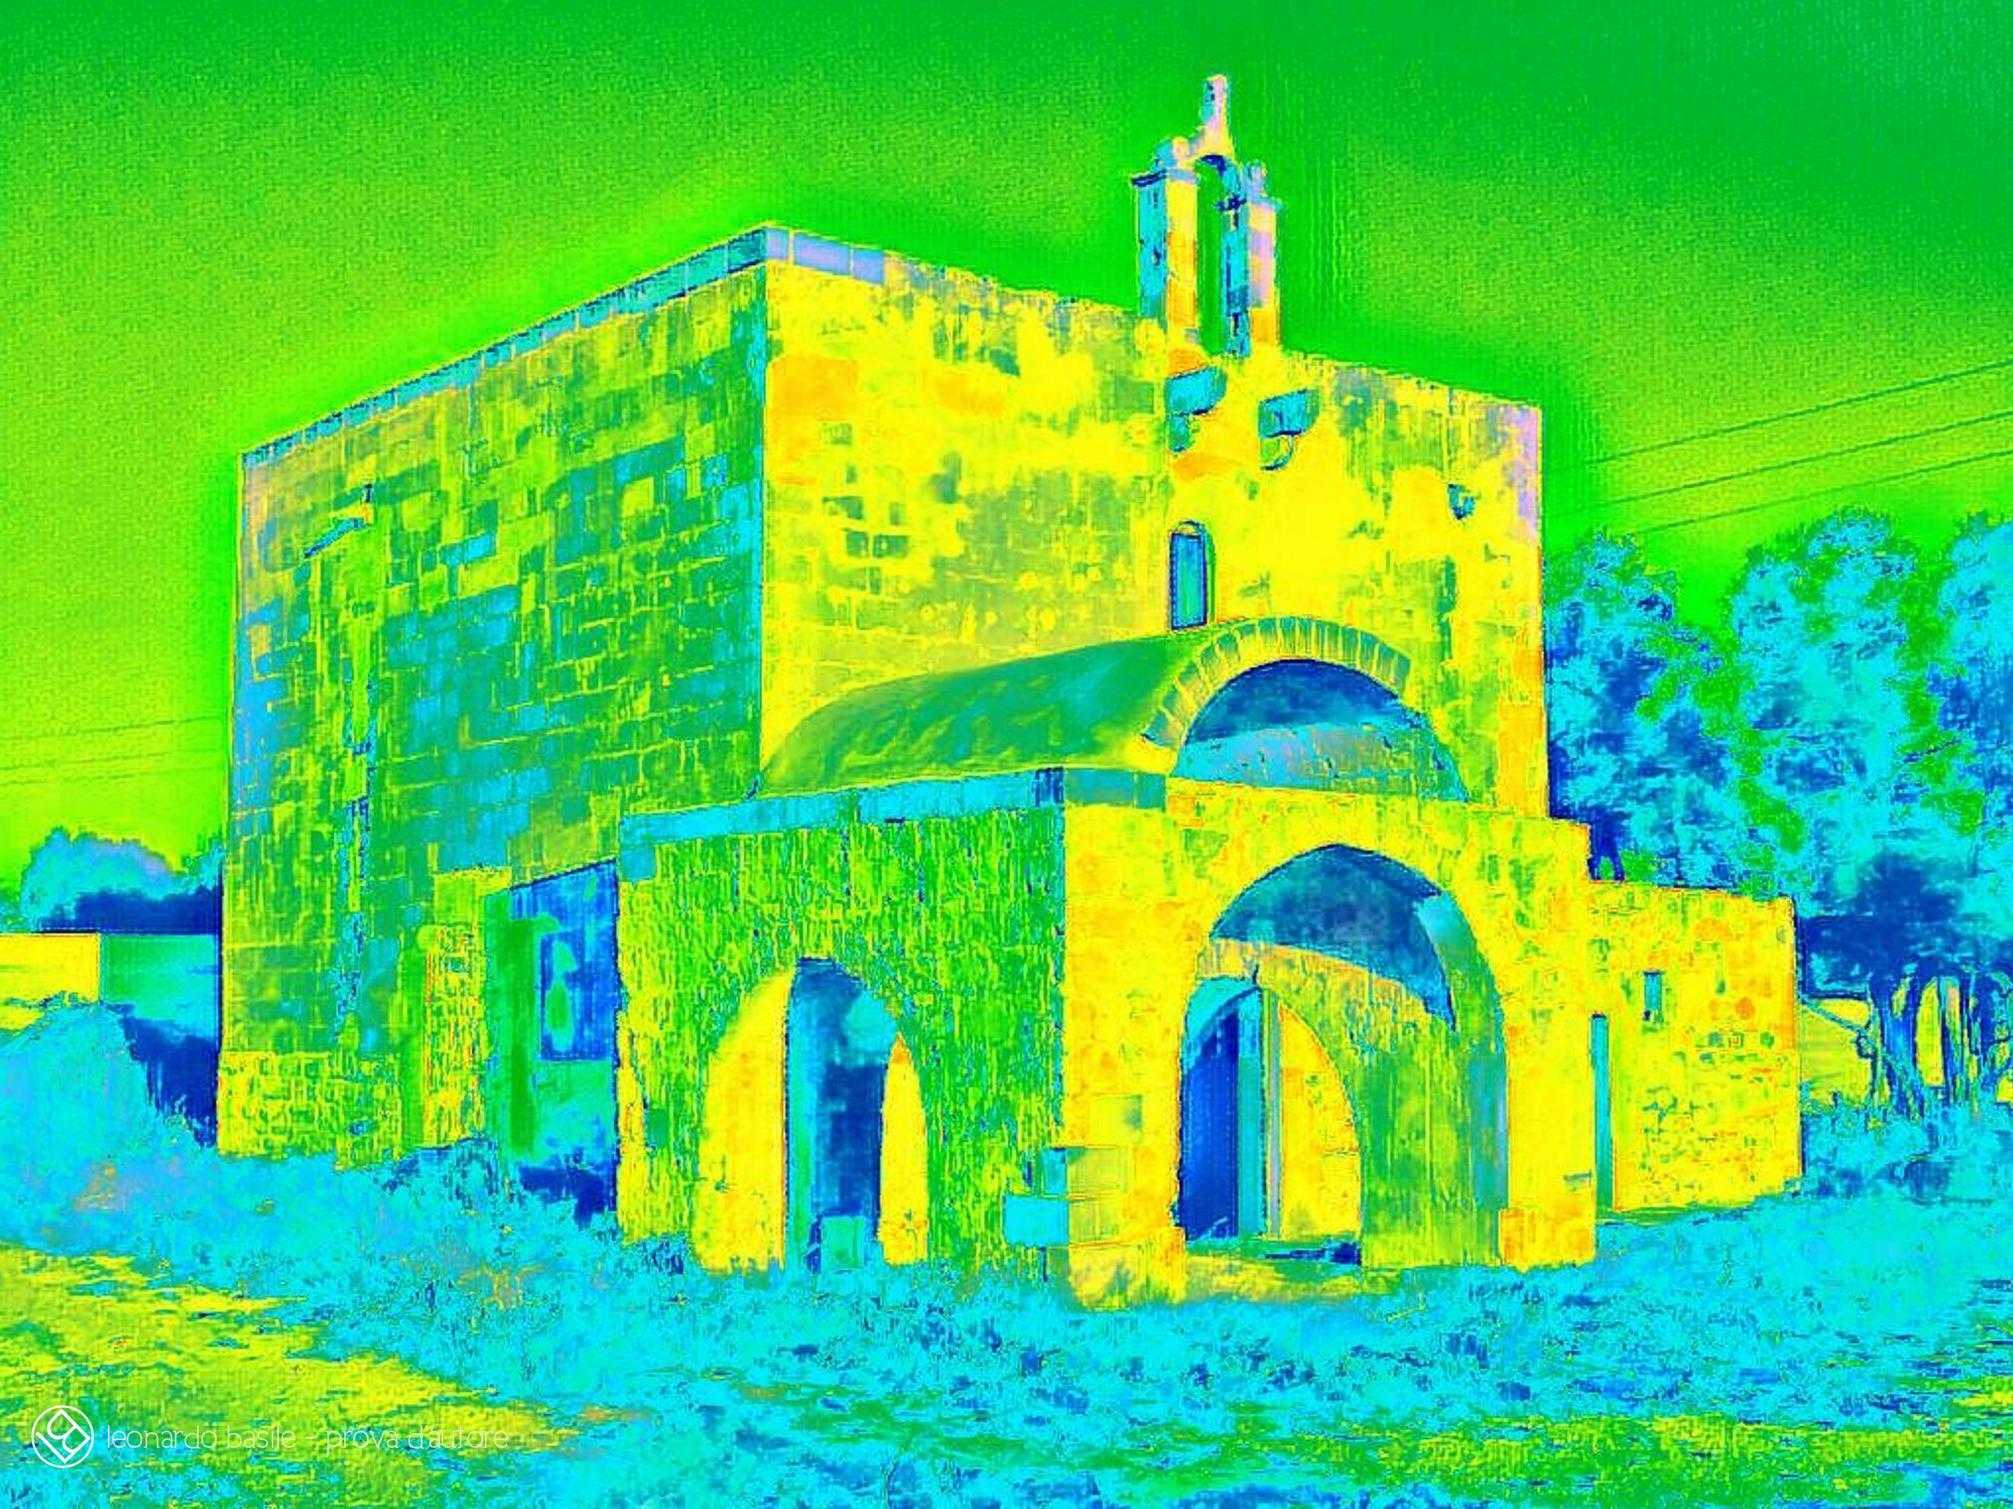 Elaborazione grafica da una fotografia della Chiesa medievale dell'Annunziata di Bari/S.Spirito- 14